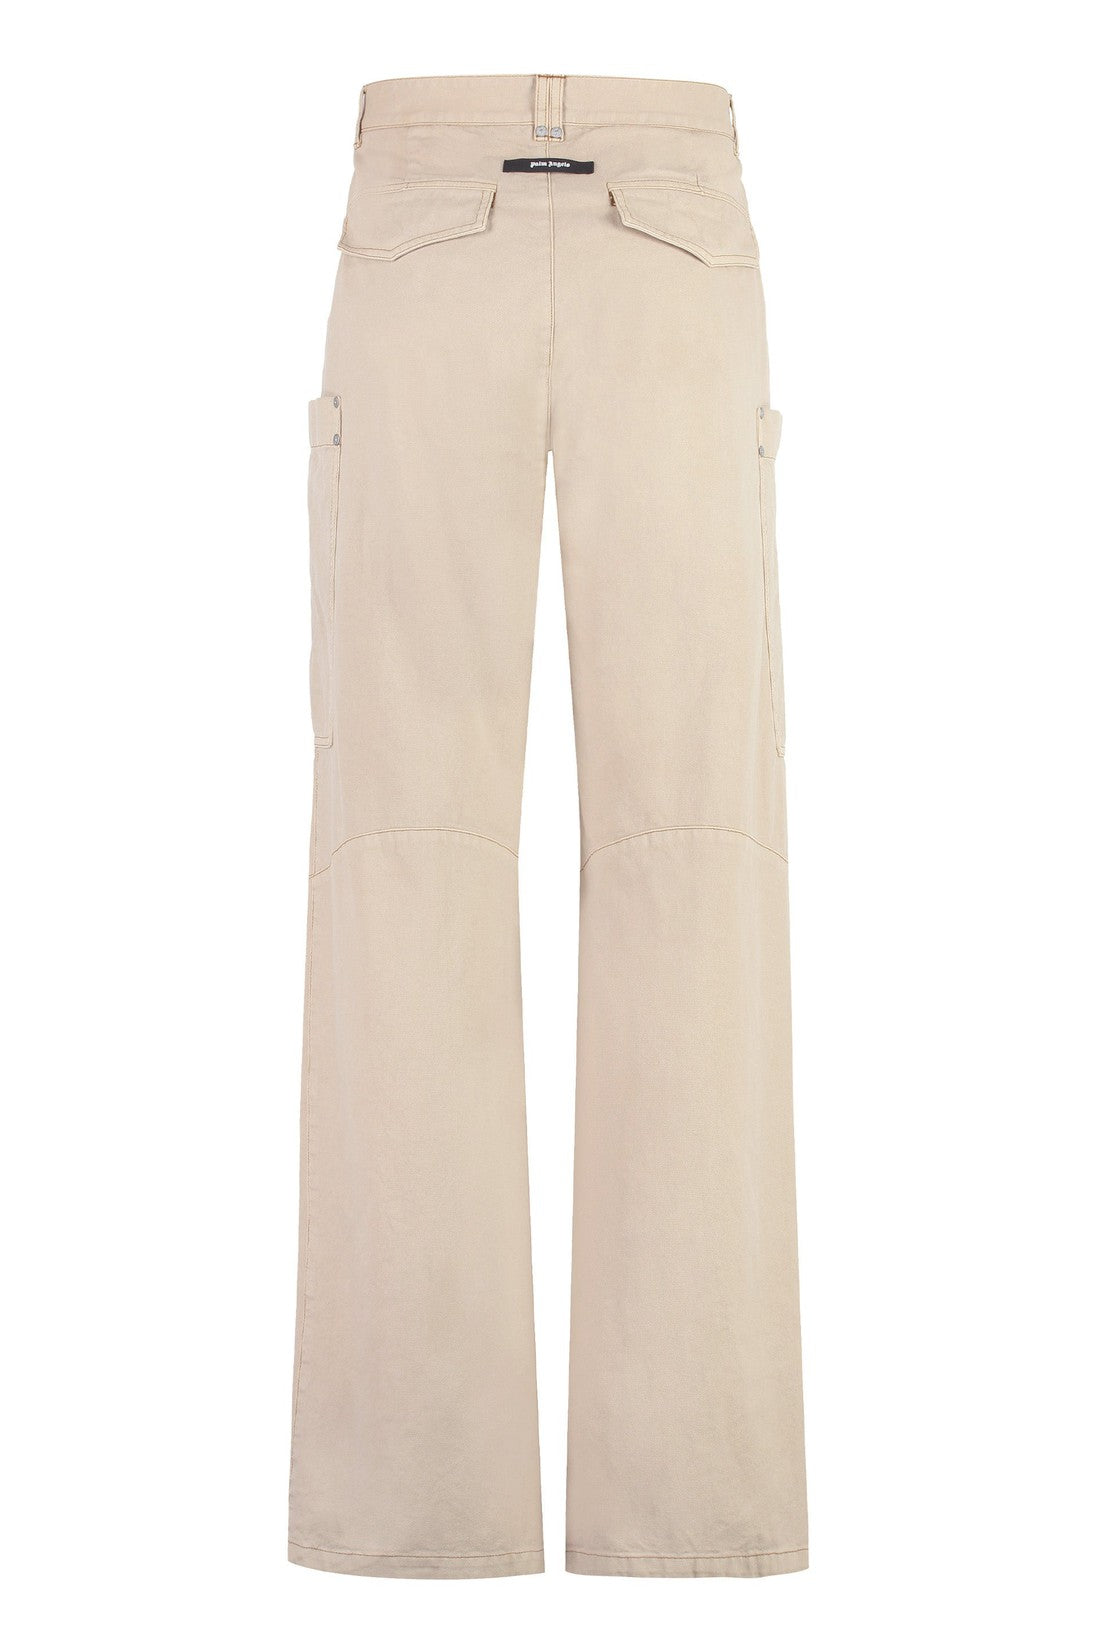 Palm Angels-OUTLET-SALE-Multi-pocket cotton trousers-ARCHIVIST